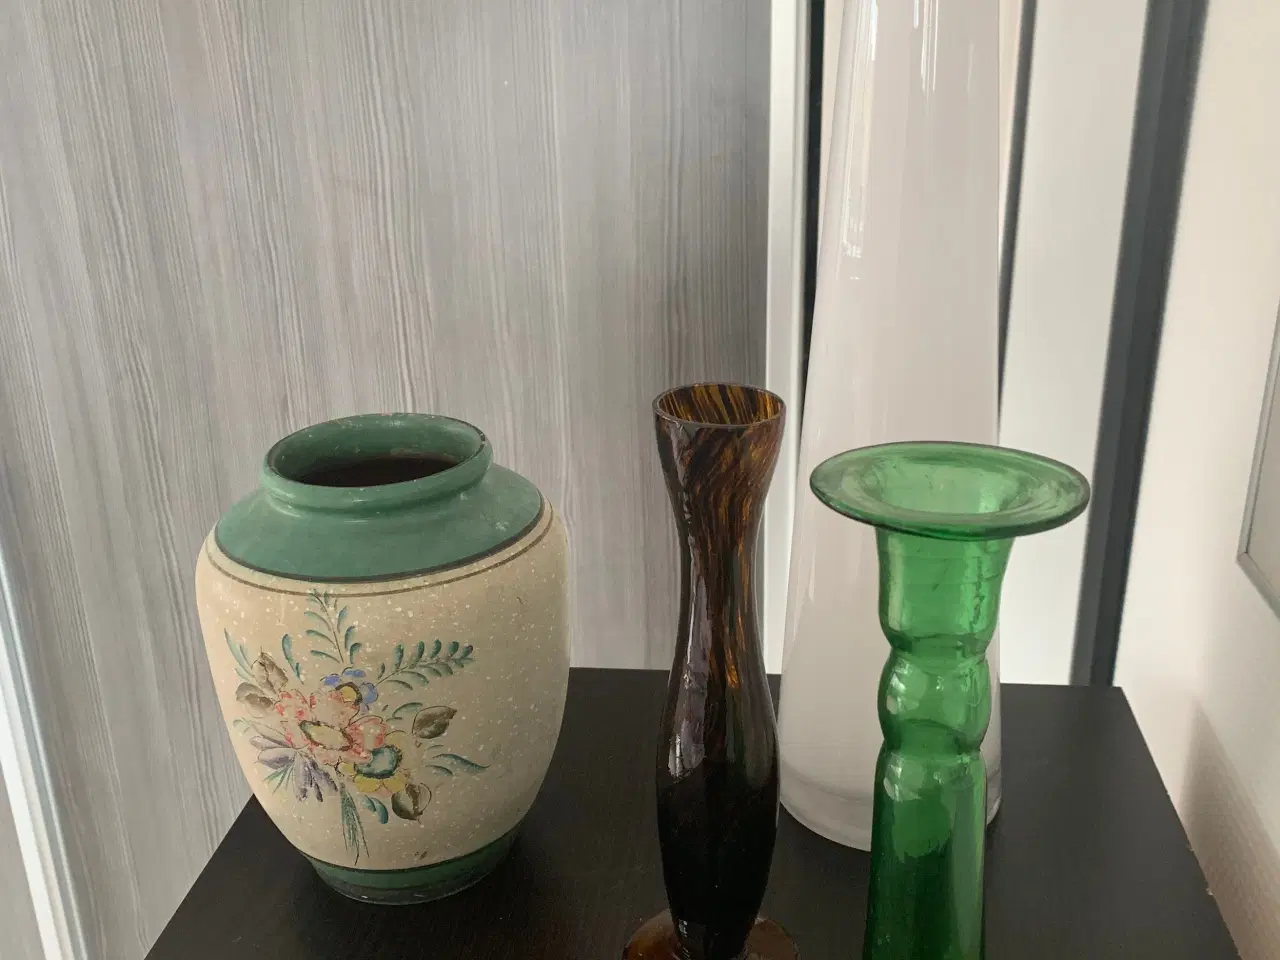 Billede 1 - Vaser -den brune er solgt